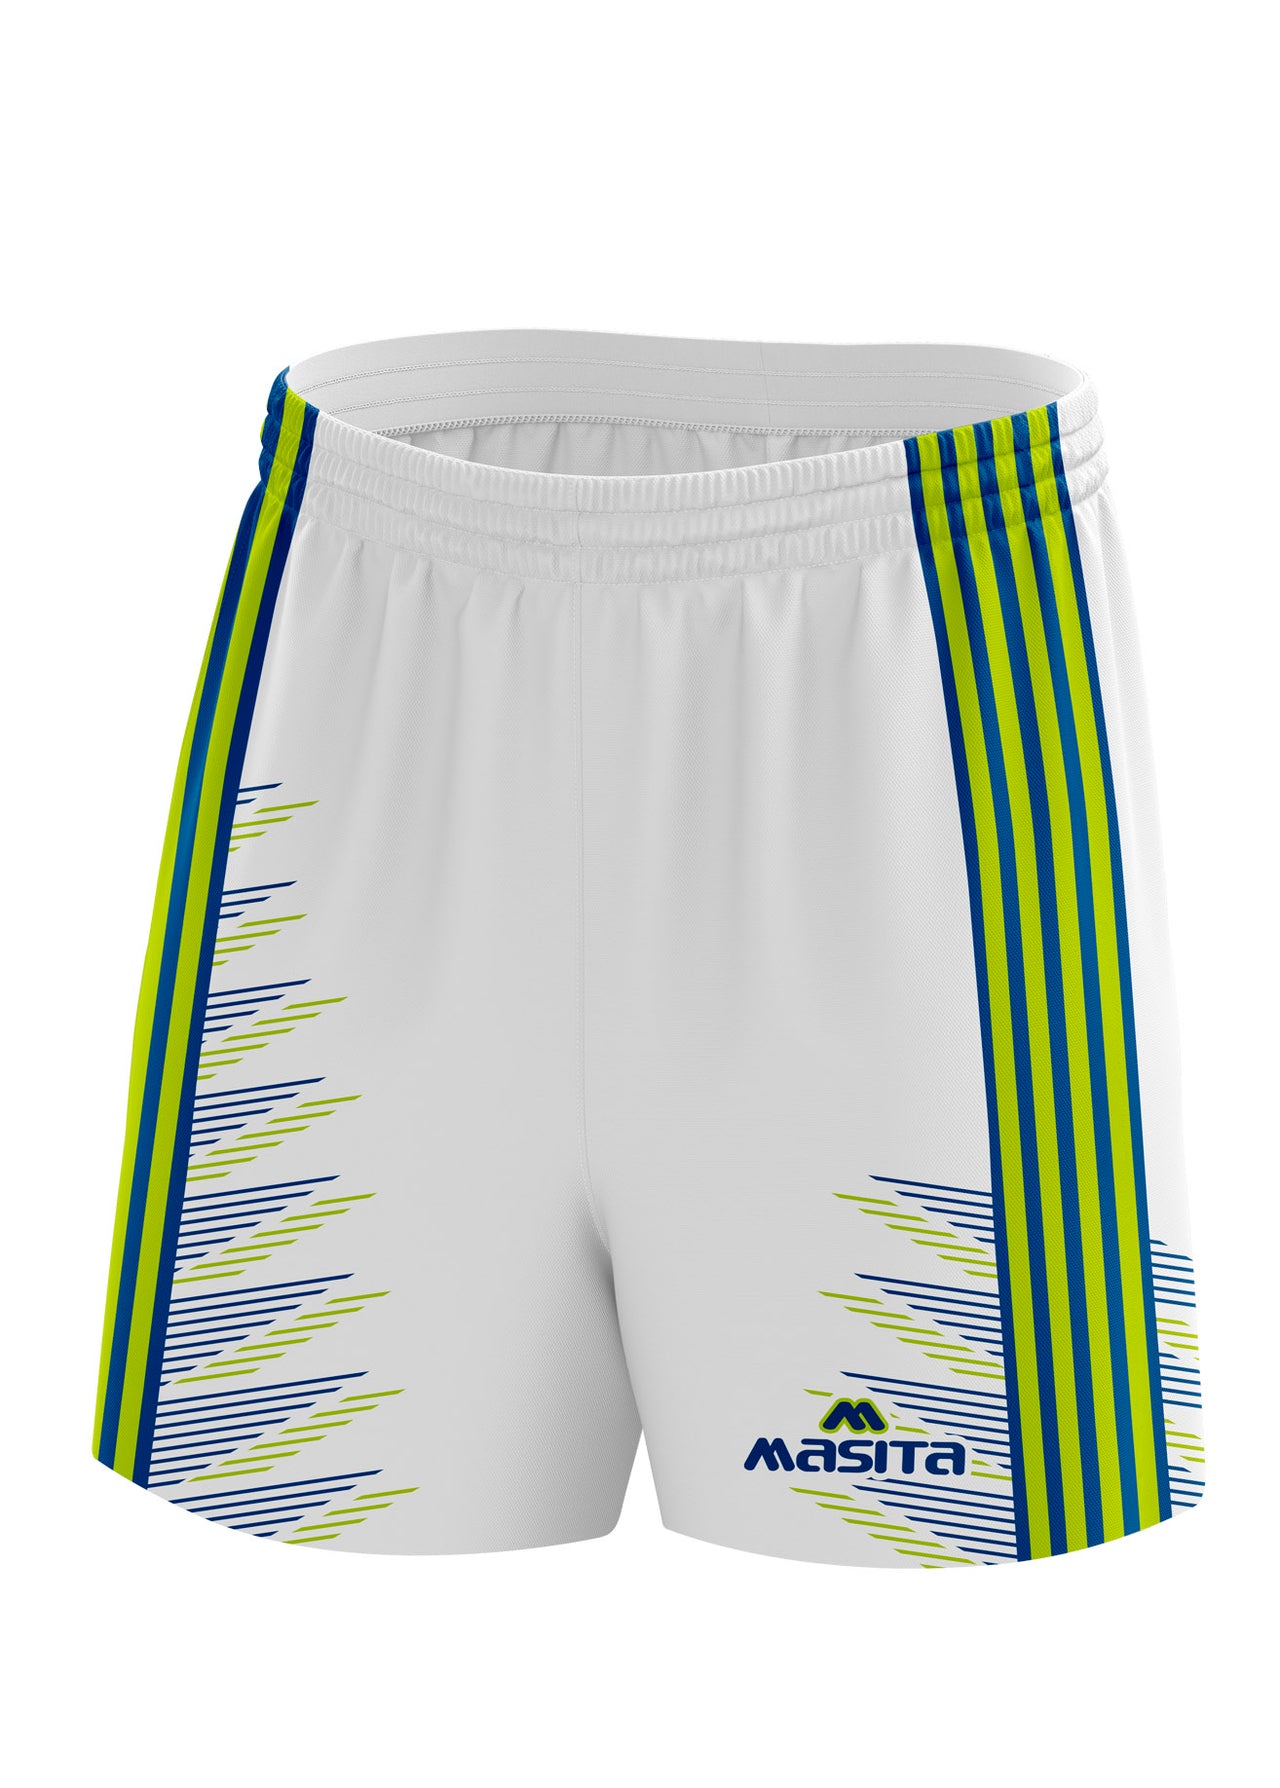 Hydro Gaelic Shorts White/Navy/Neo Green Adult